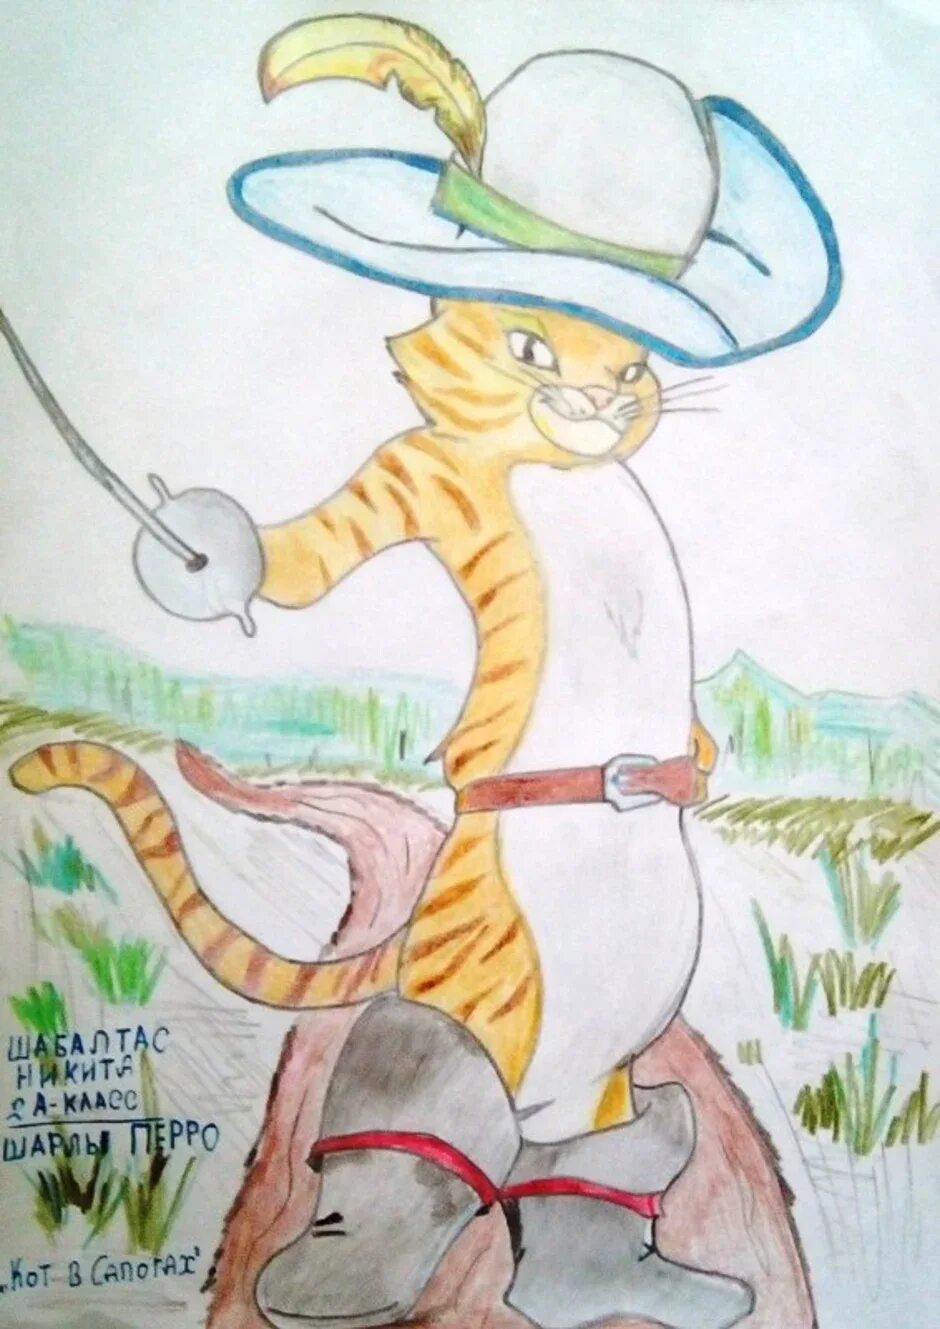 Иллюстрация кот в сапогах 2 класс. Кот в сапогахшарли перо. Иллюстрацию к сказке ш.Перро "кот в сапогах".